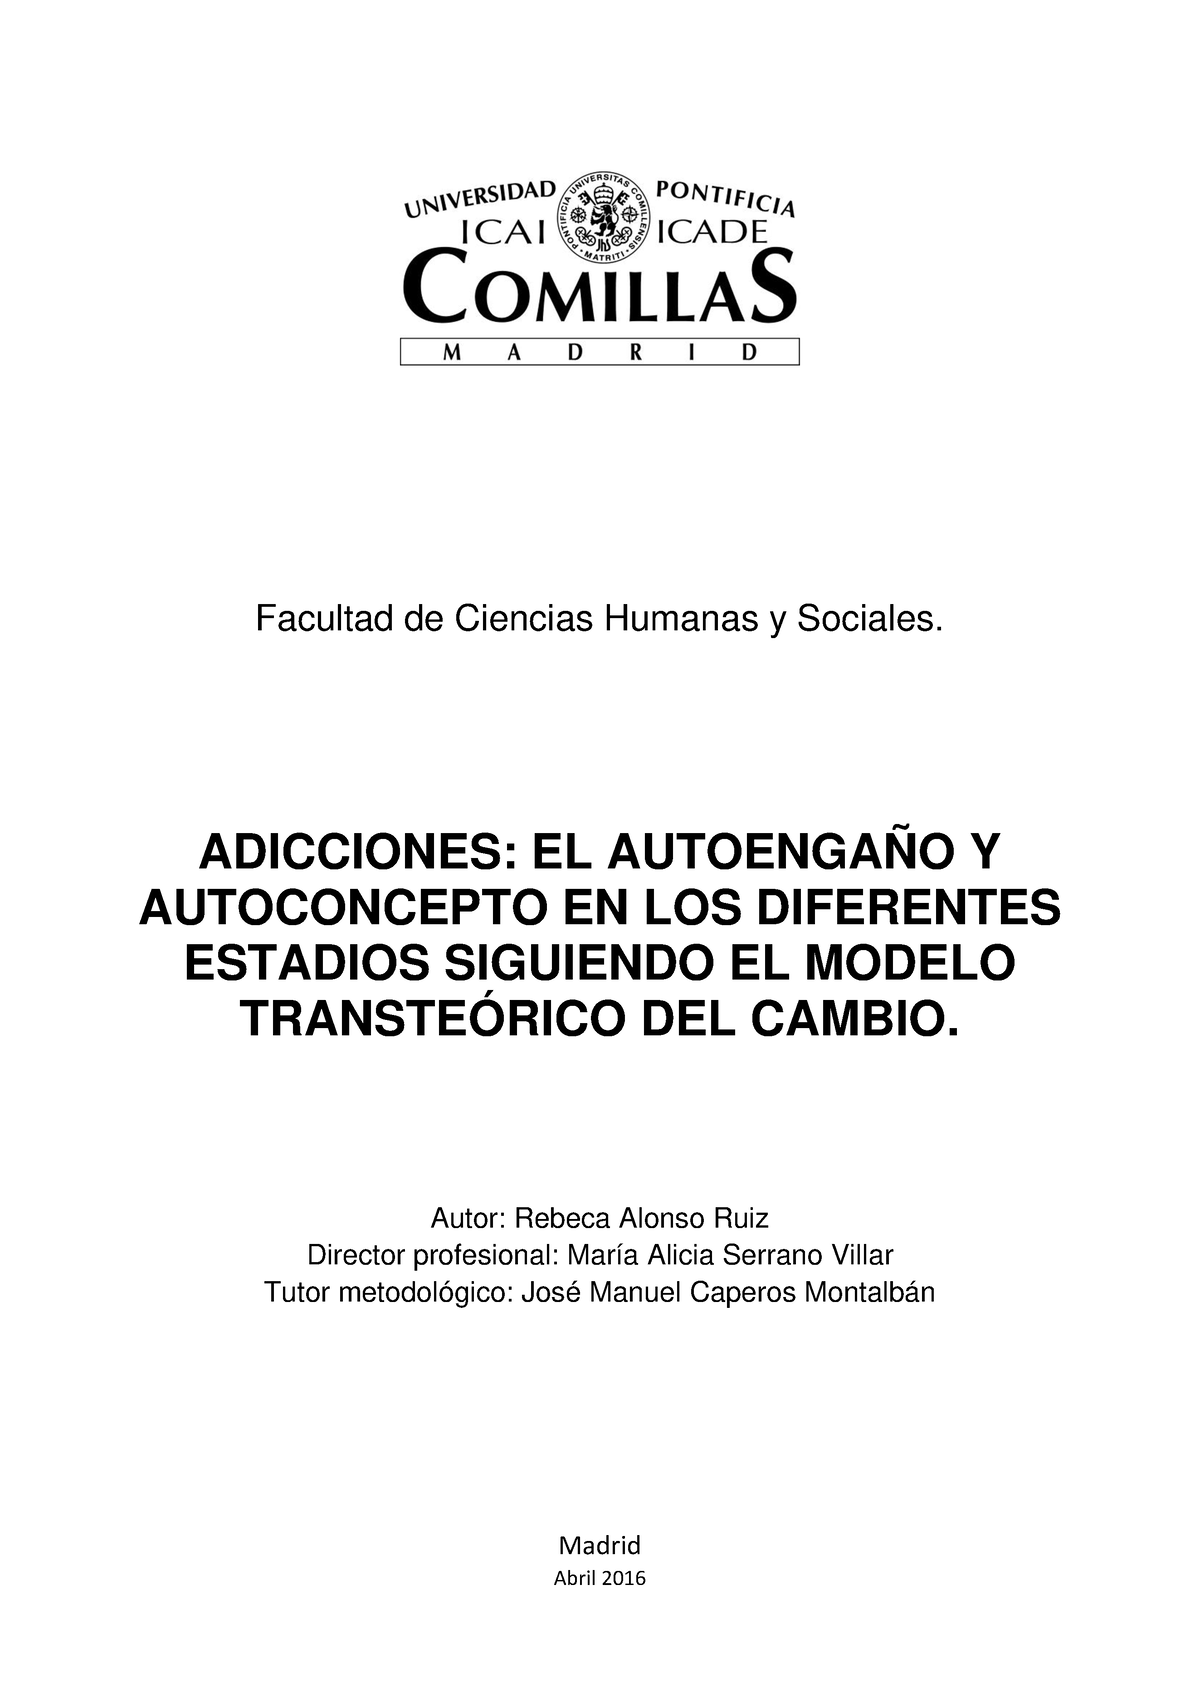 TFM000435 - TFM sobre drogodependencia - Facultad de Ciencias Humanas y  Sociales. ADICCIONES: EL - Studocu